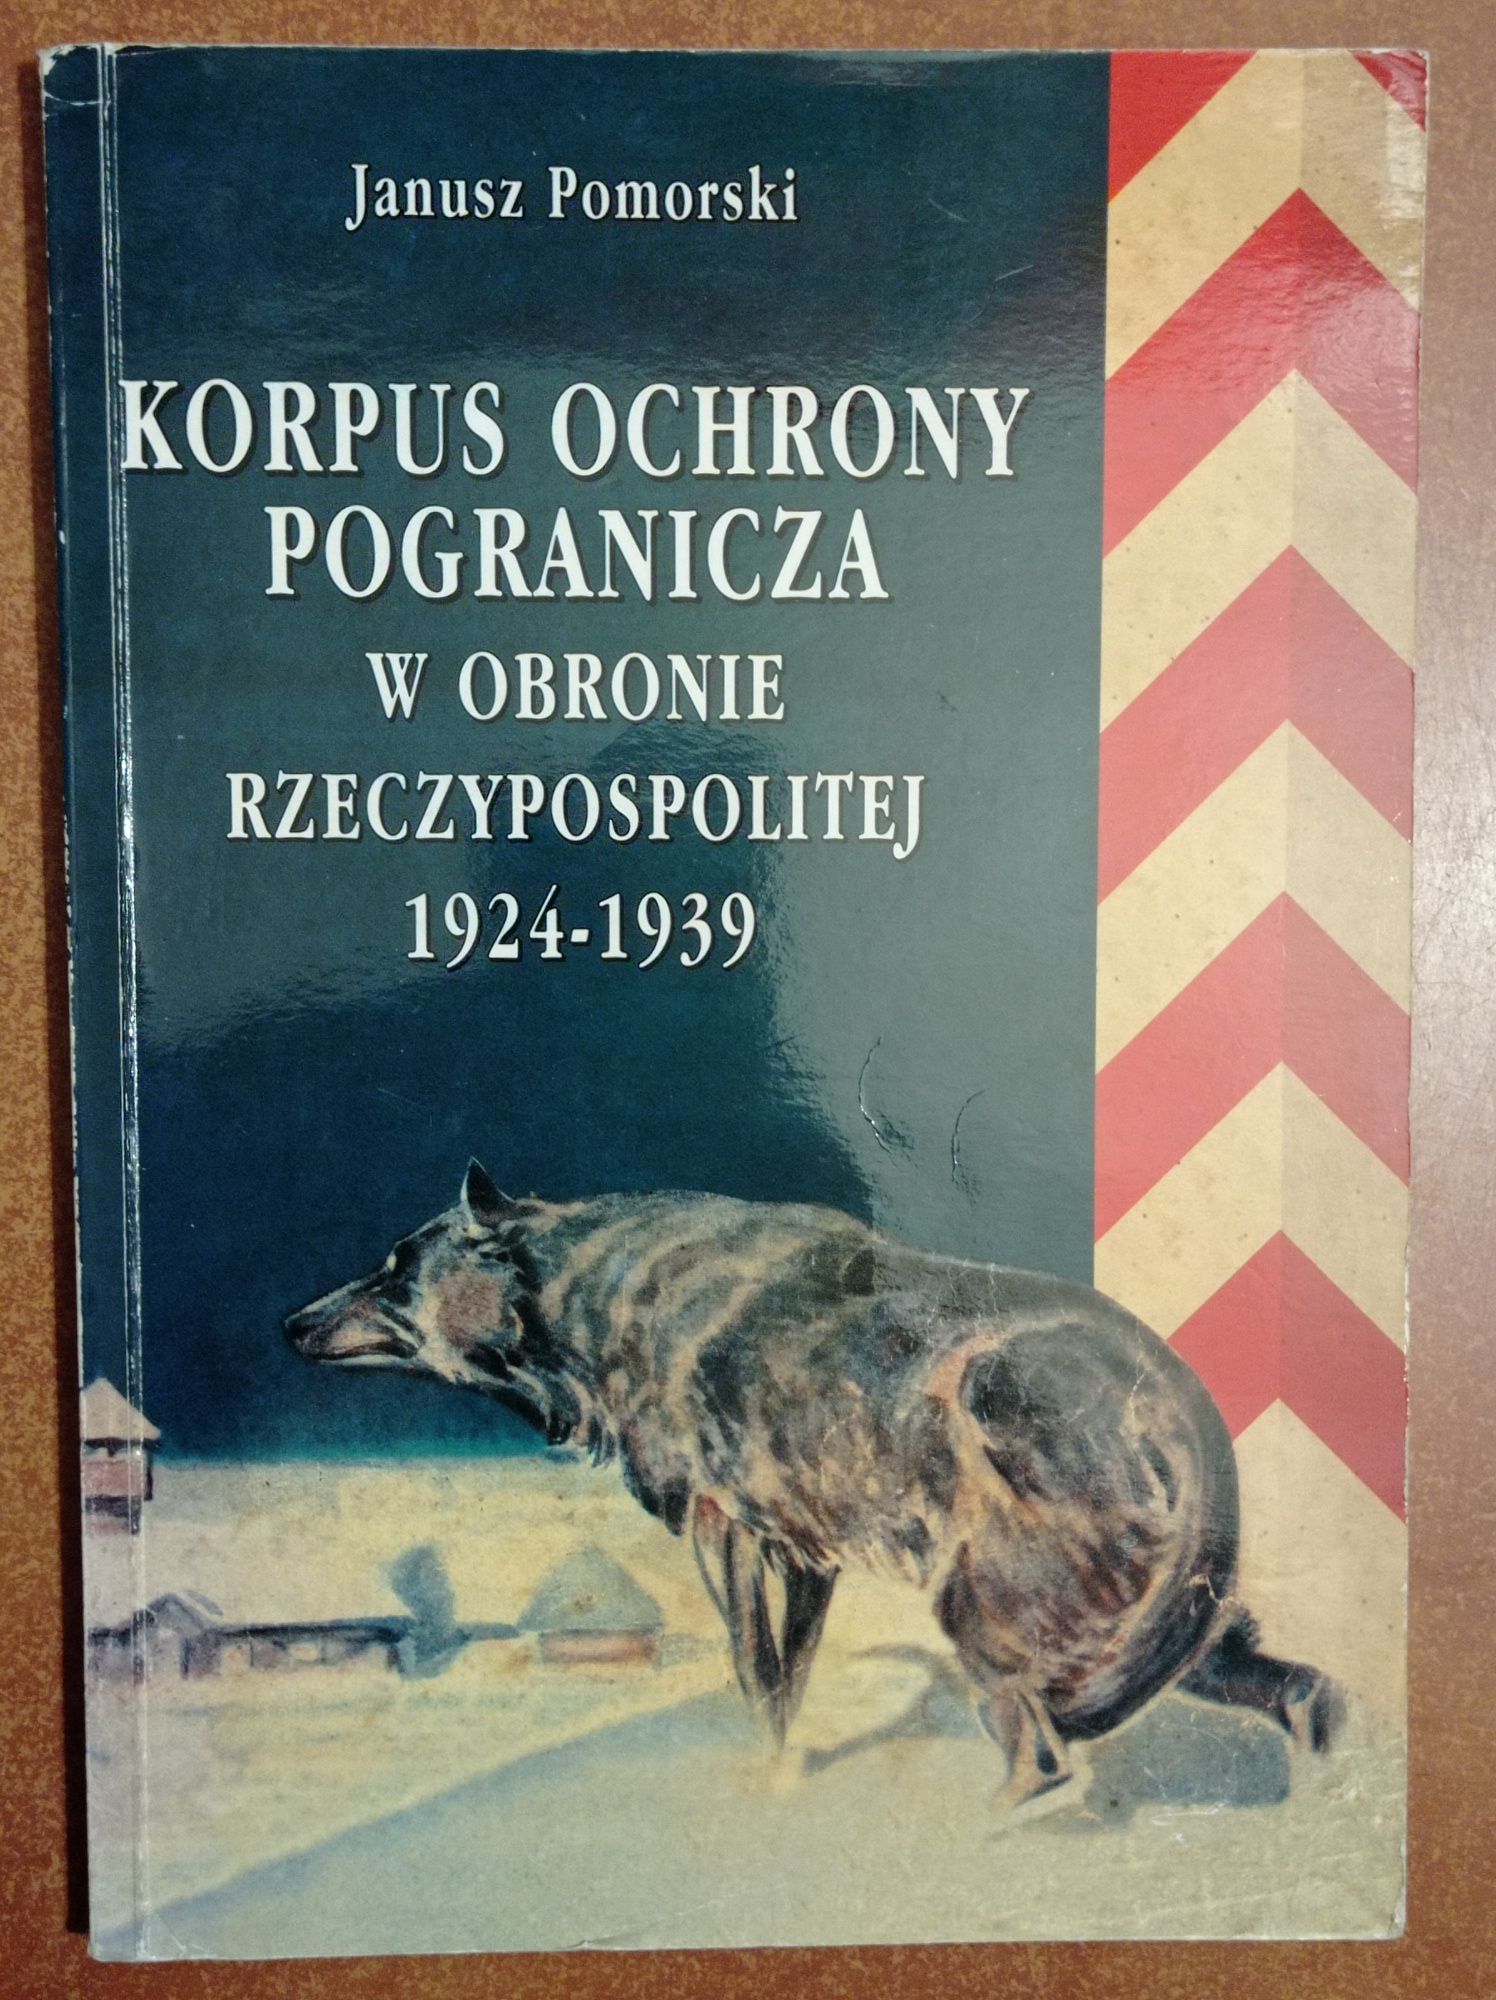 Korpus ochrony pogranicza w obronie Rzeczypospolitej 1924/1939